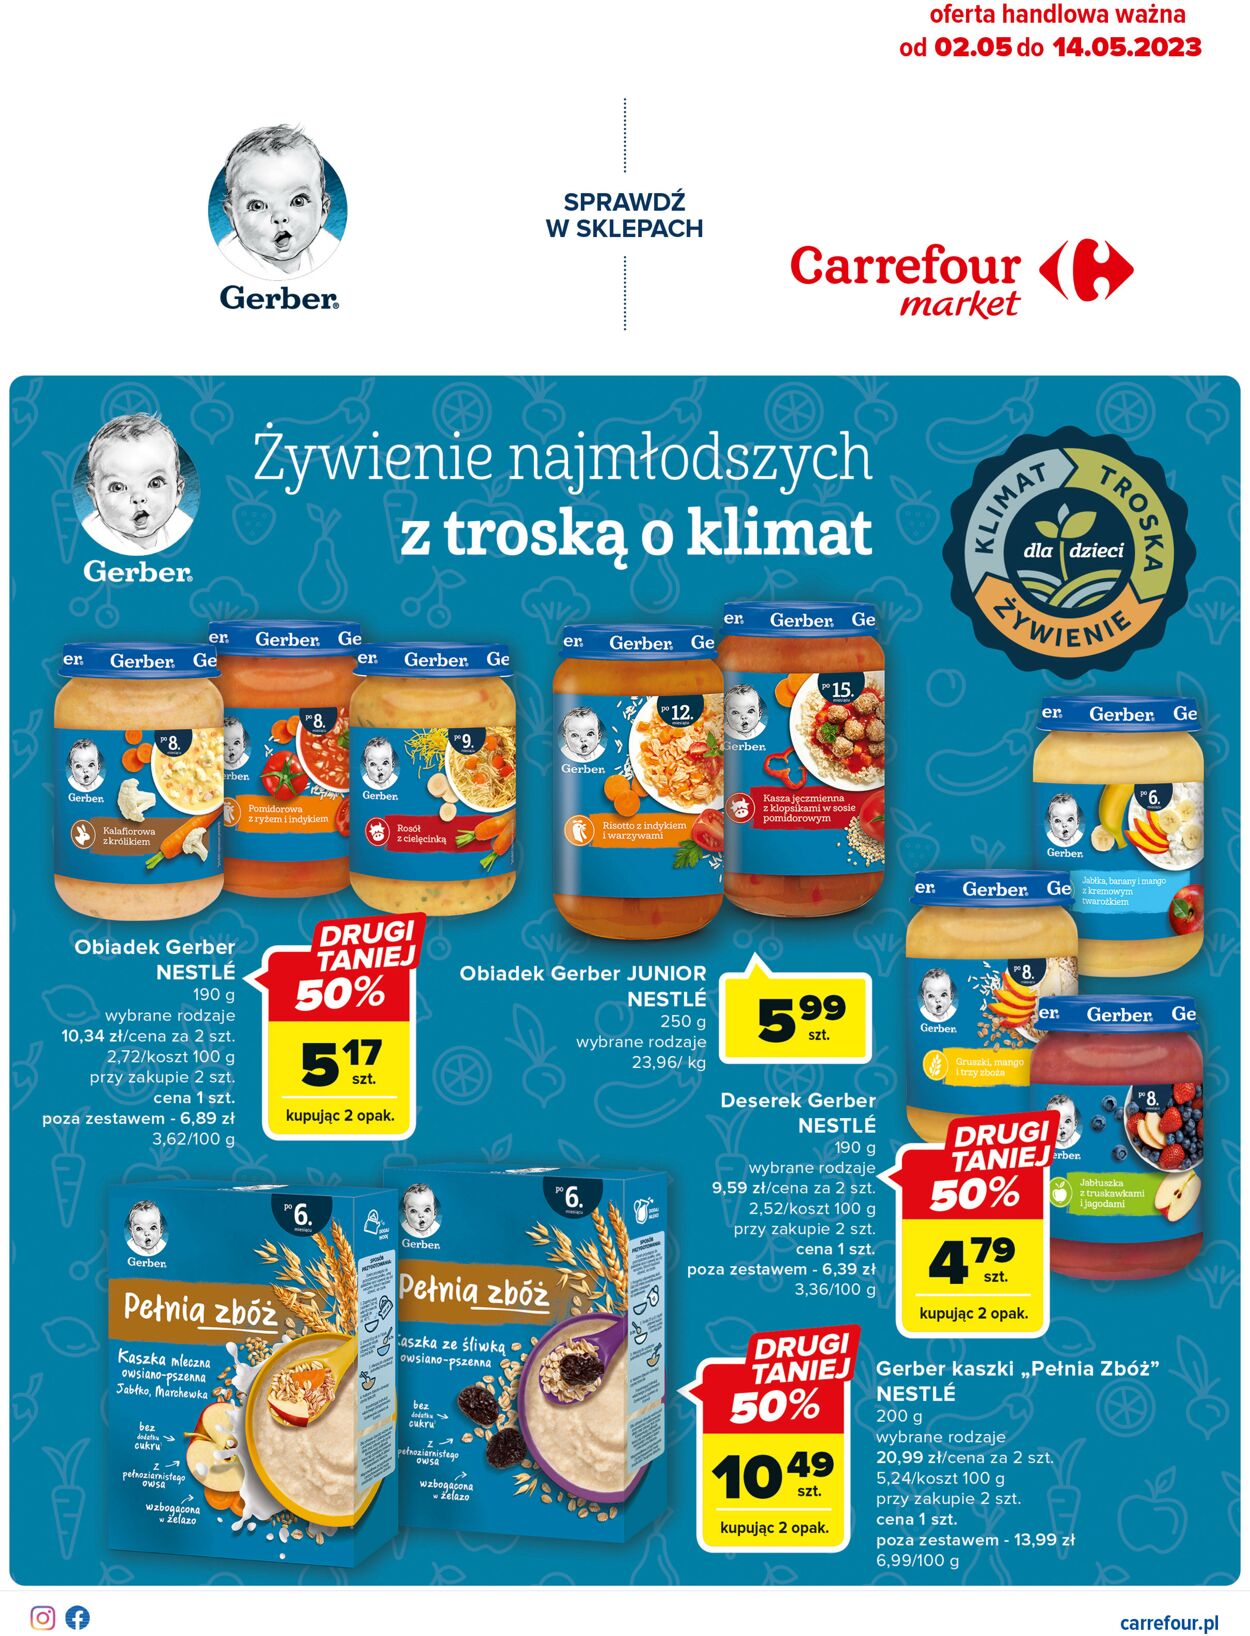 Carrefour Market Gazetka od 02.05.2023